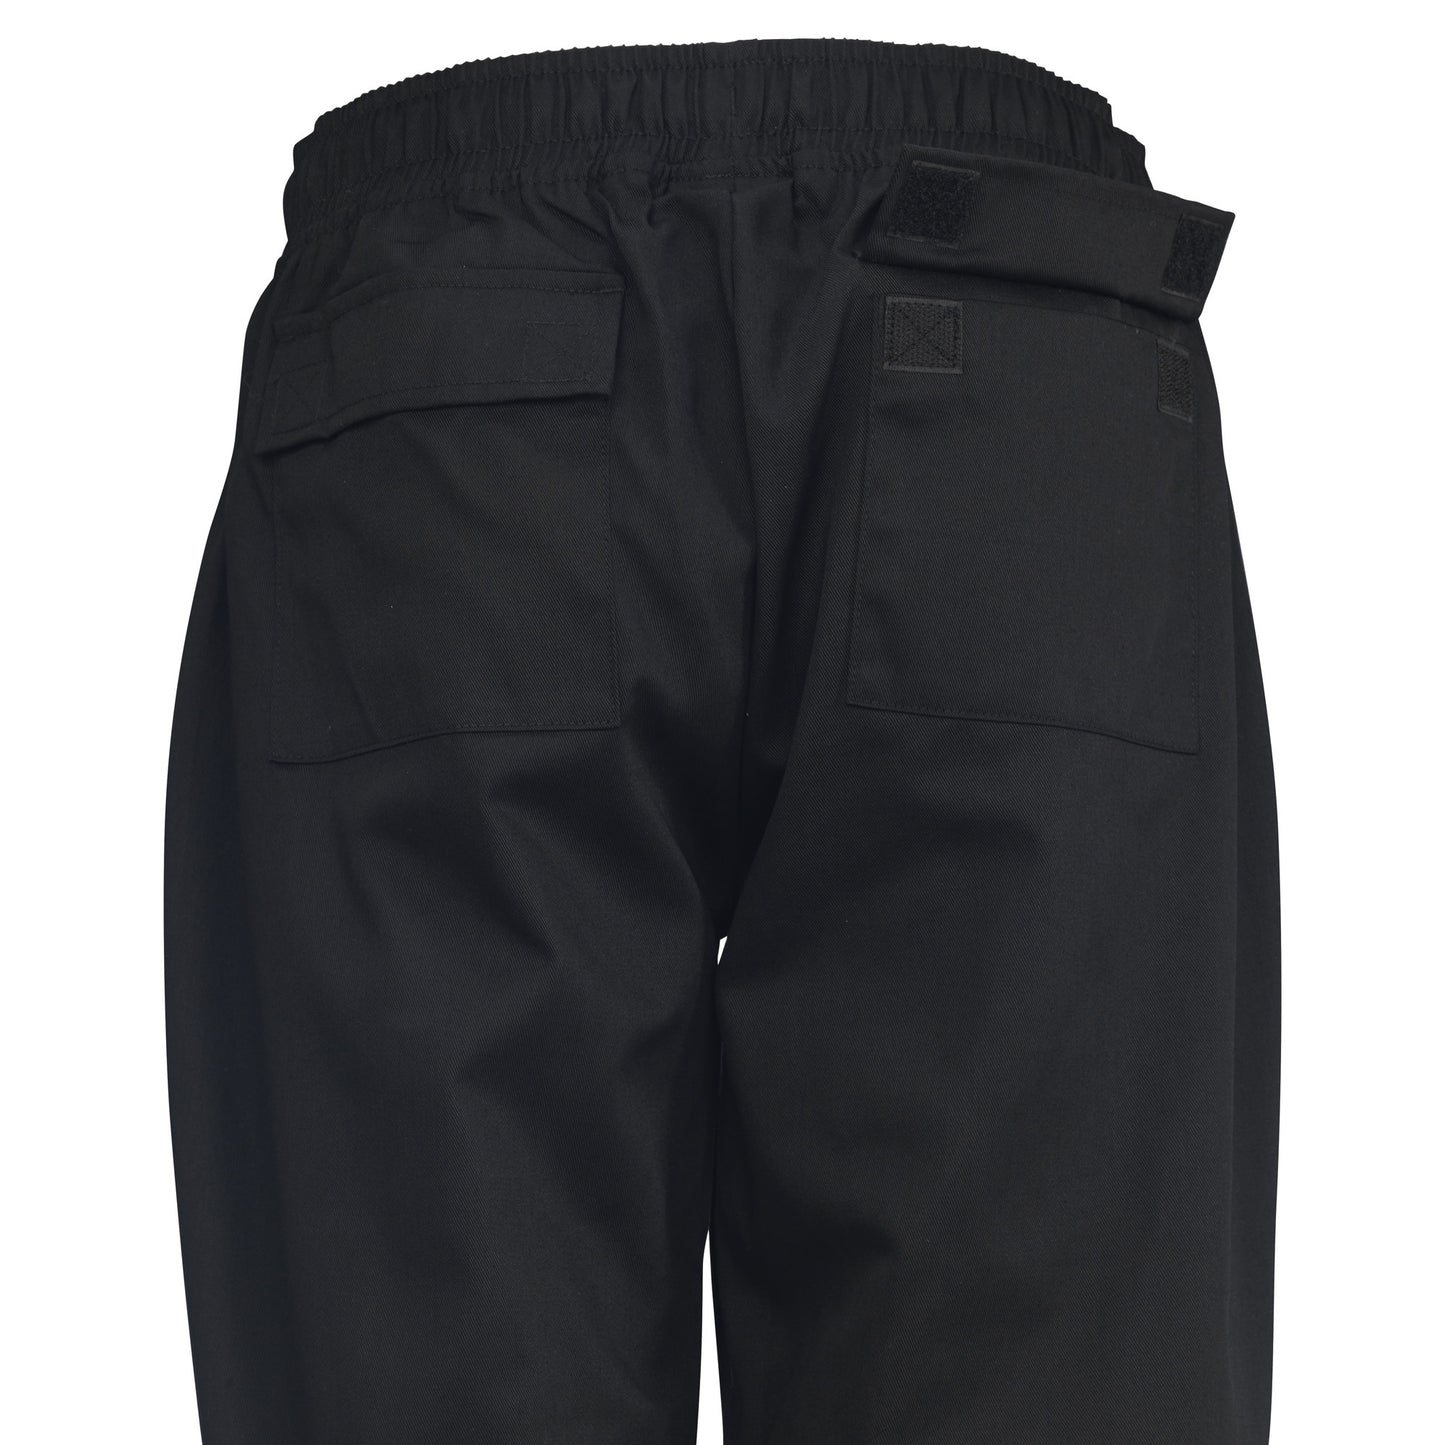 UNF-8KL - Women's Chef Pants, Black - Large